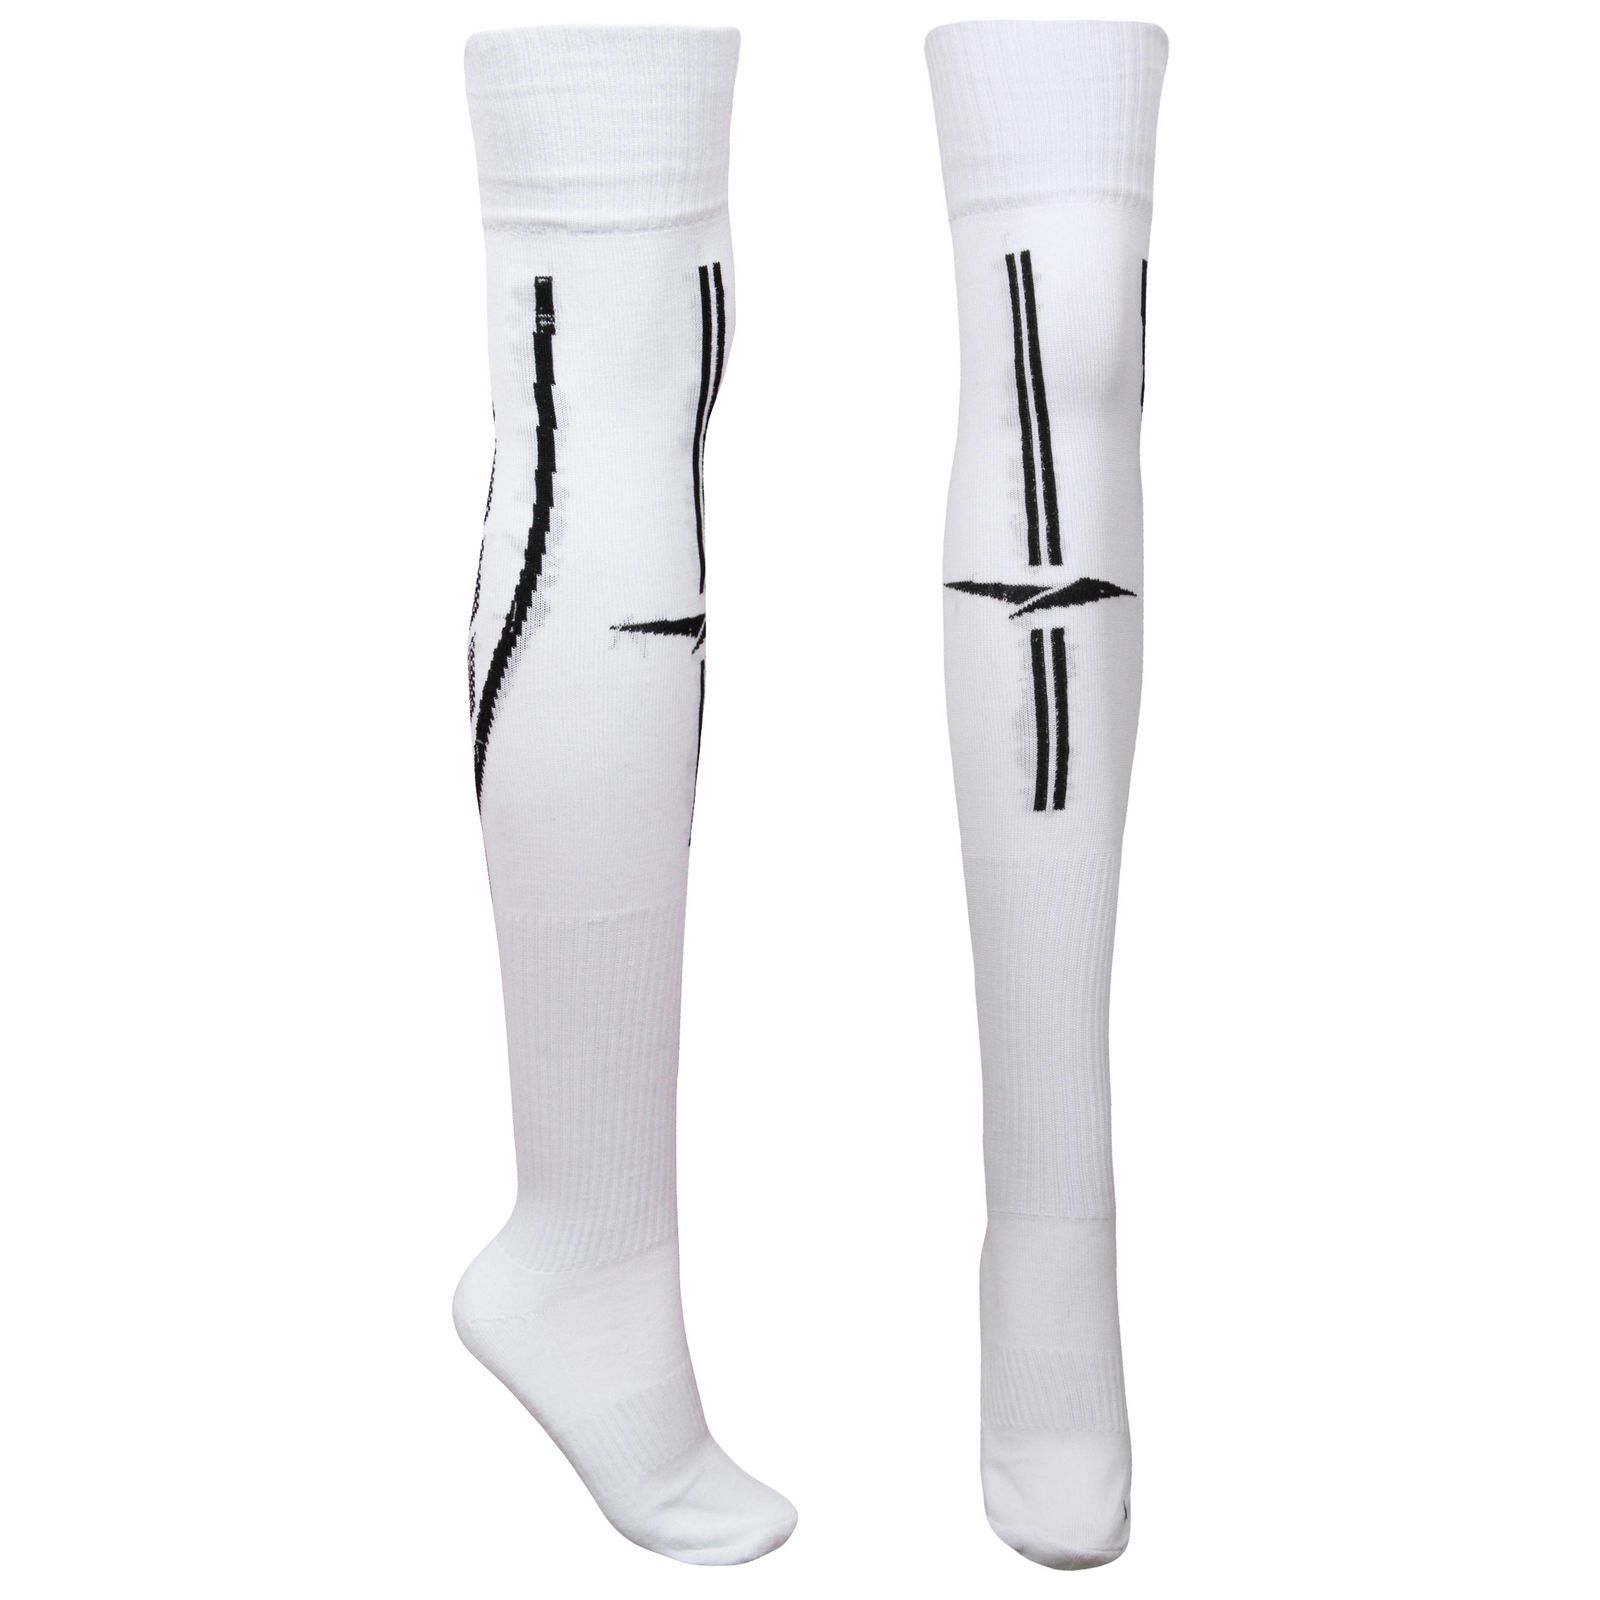 جوراب ورزشی ساق بلند مردانه ماییلدا مدل کف حوله ای کد 4187 رنگ سفید -  - 1